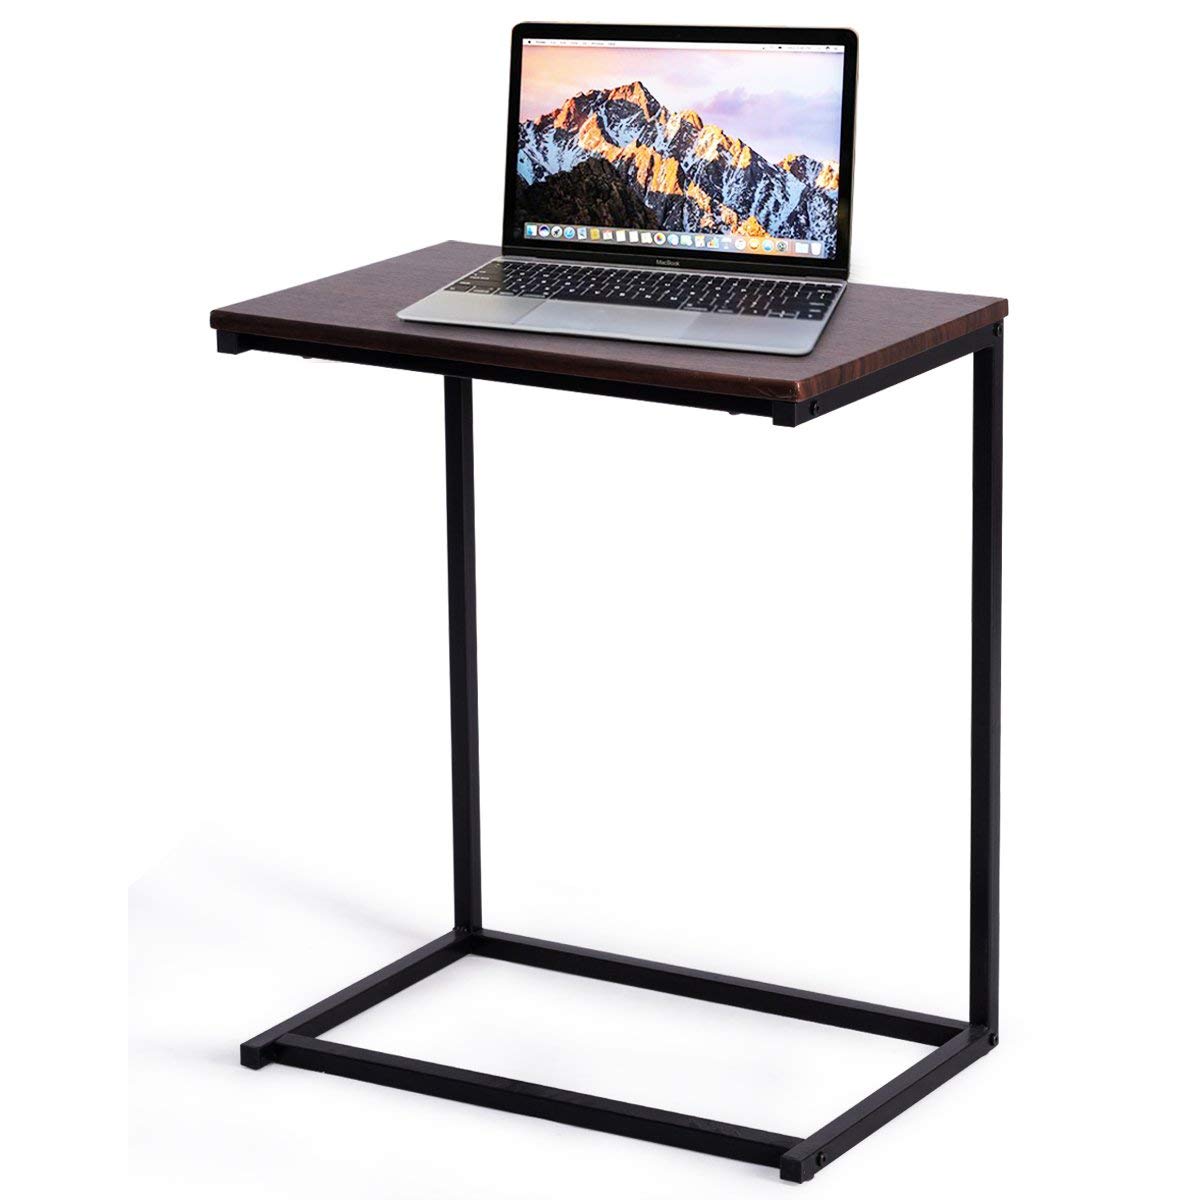 

Sofa Side End Table C Shaped Laptop Desk Holder End Stand Desk Notebook Tablet Beside Bed Sofa Table Workstation